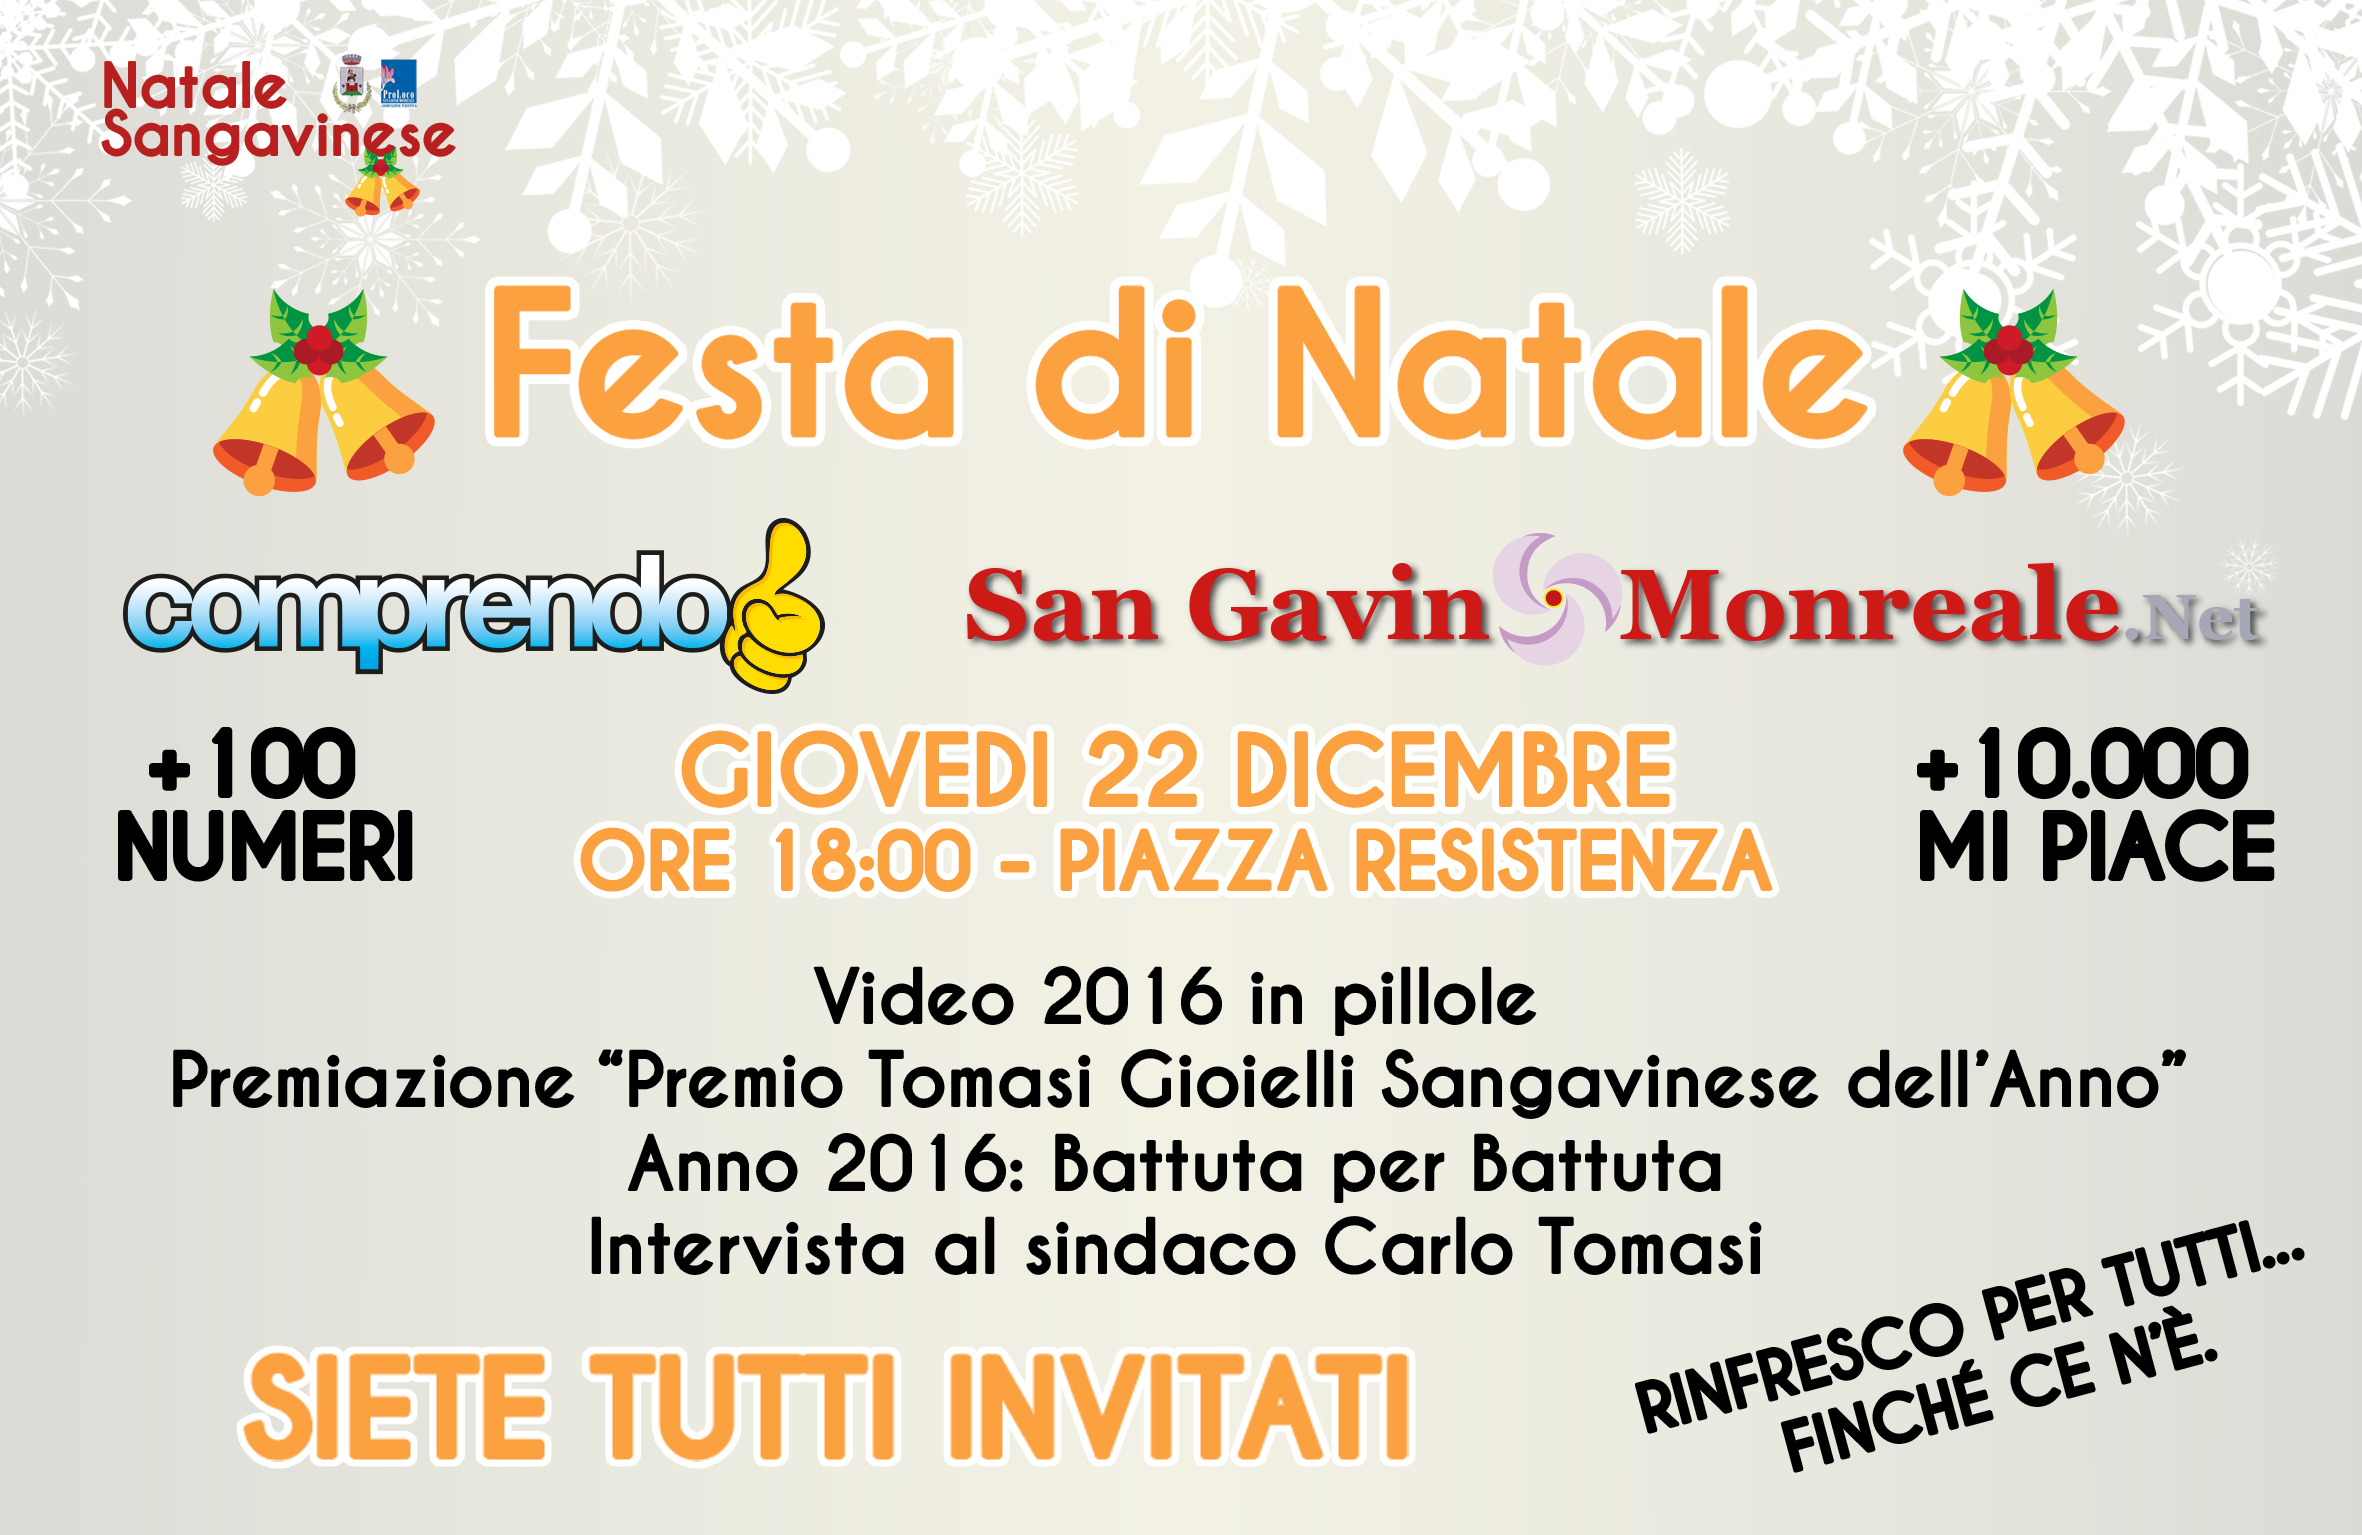 La Festa di Natale di Comprendo e San Gavino Monreale . Net